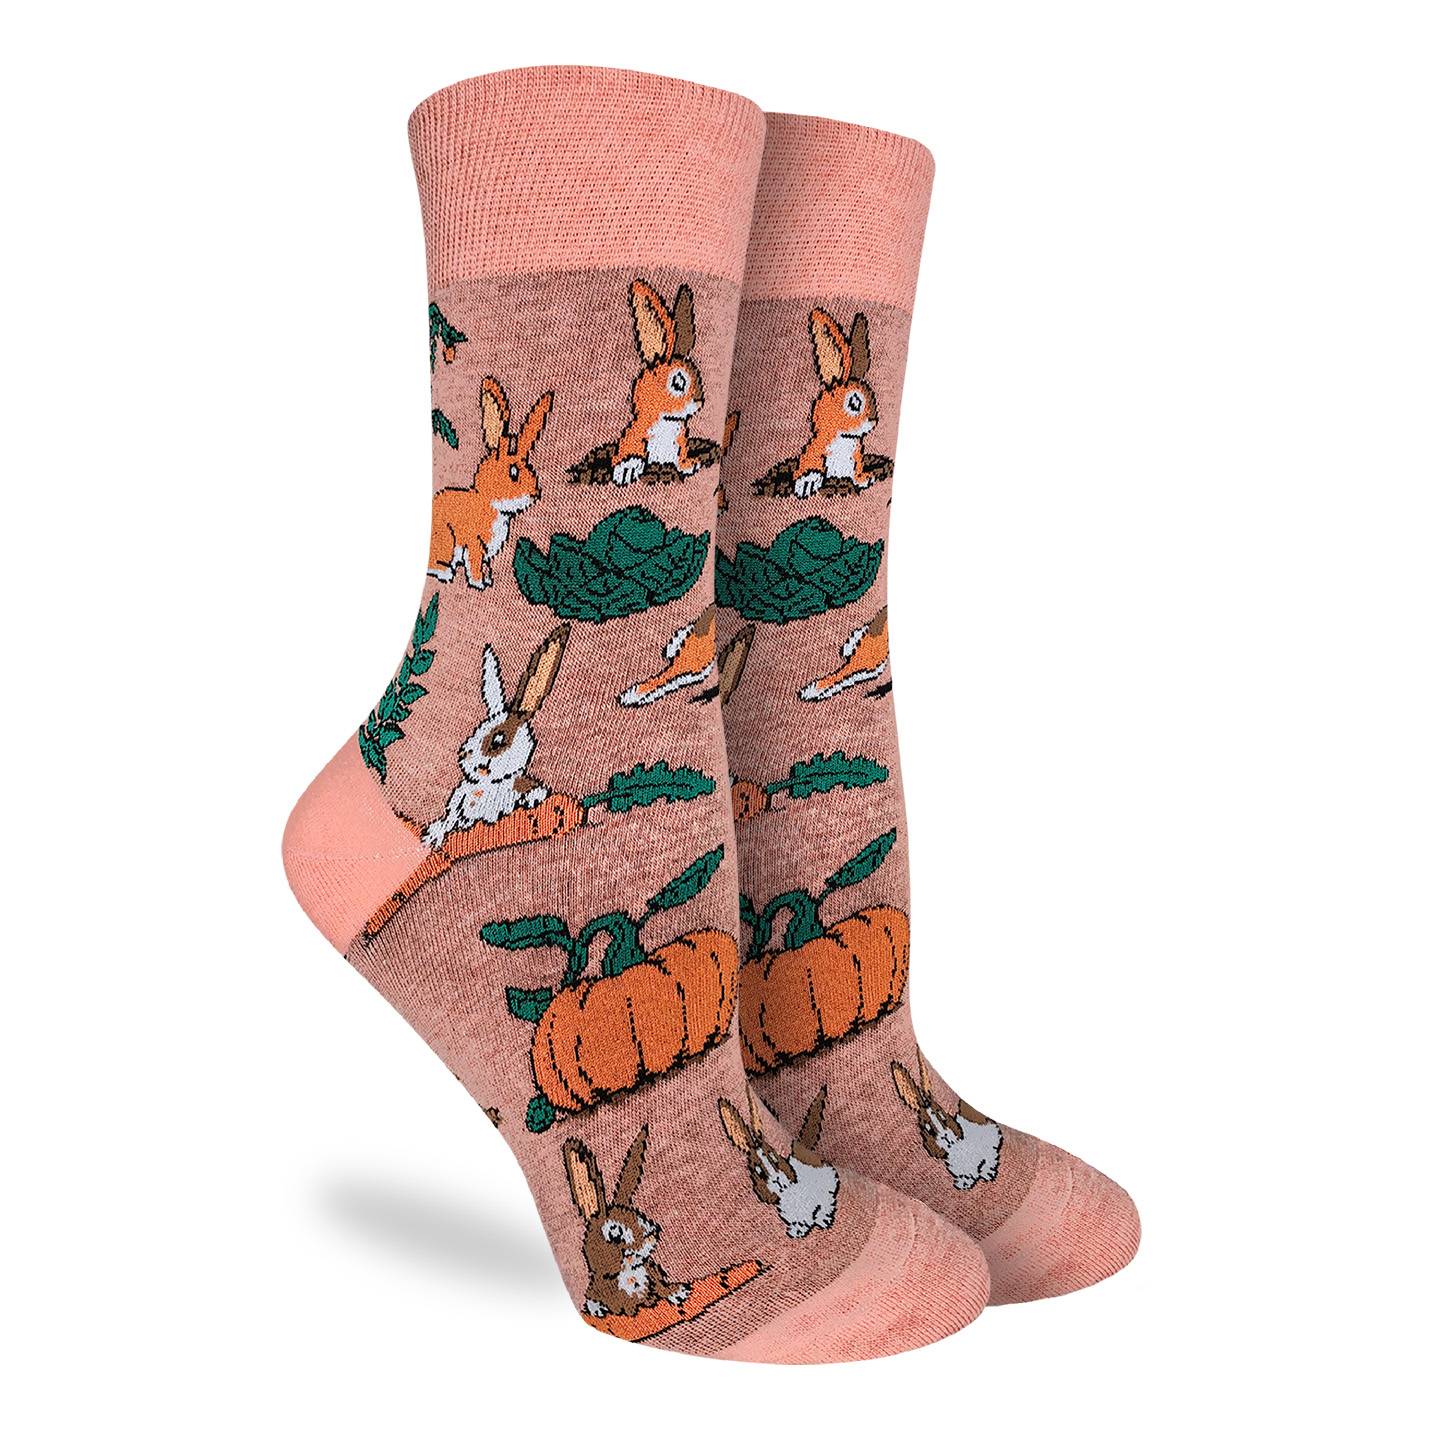 Good Luck Sock - Women's Rabbits Socks